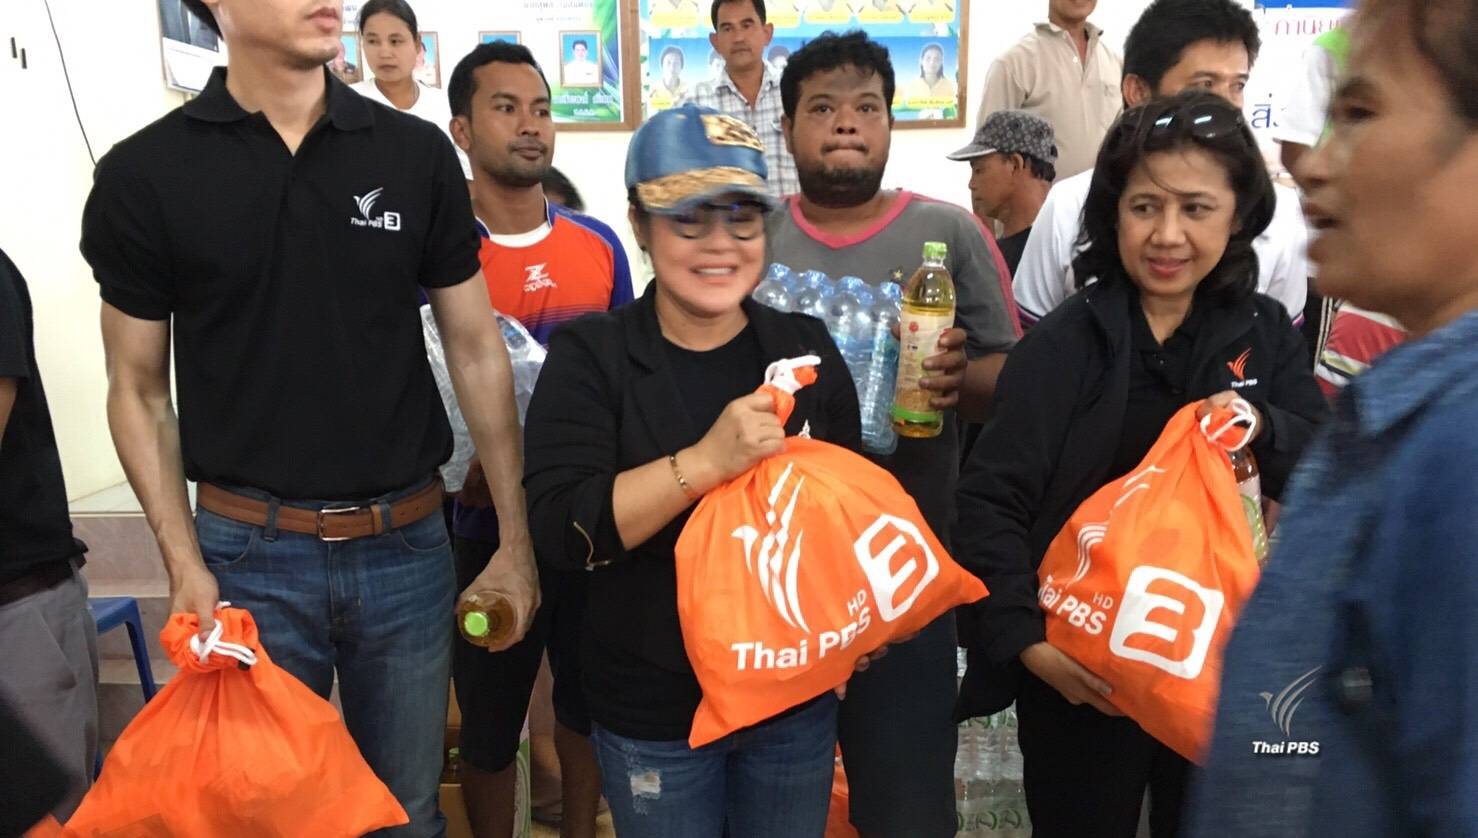 "ไทยพีบีเอส" มอบถุงยังชีพ-น้ำดื่ม ช่วยผู้ประสบอุทกภัย อ.พุนพิน จ.สุราษฏร์ธานี